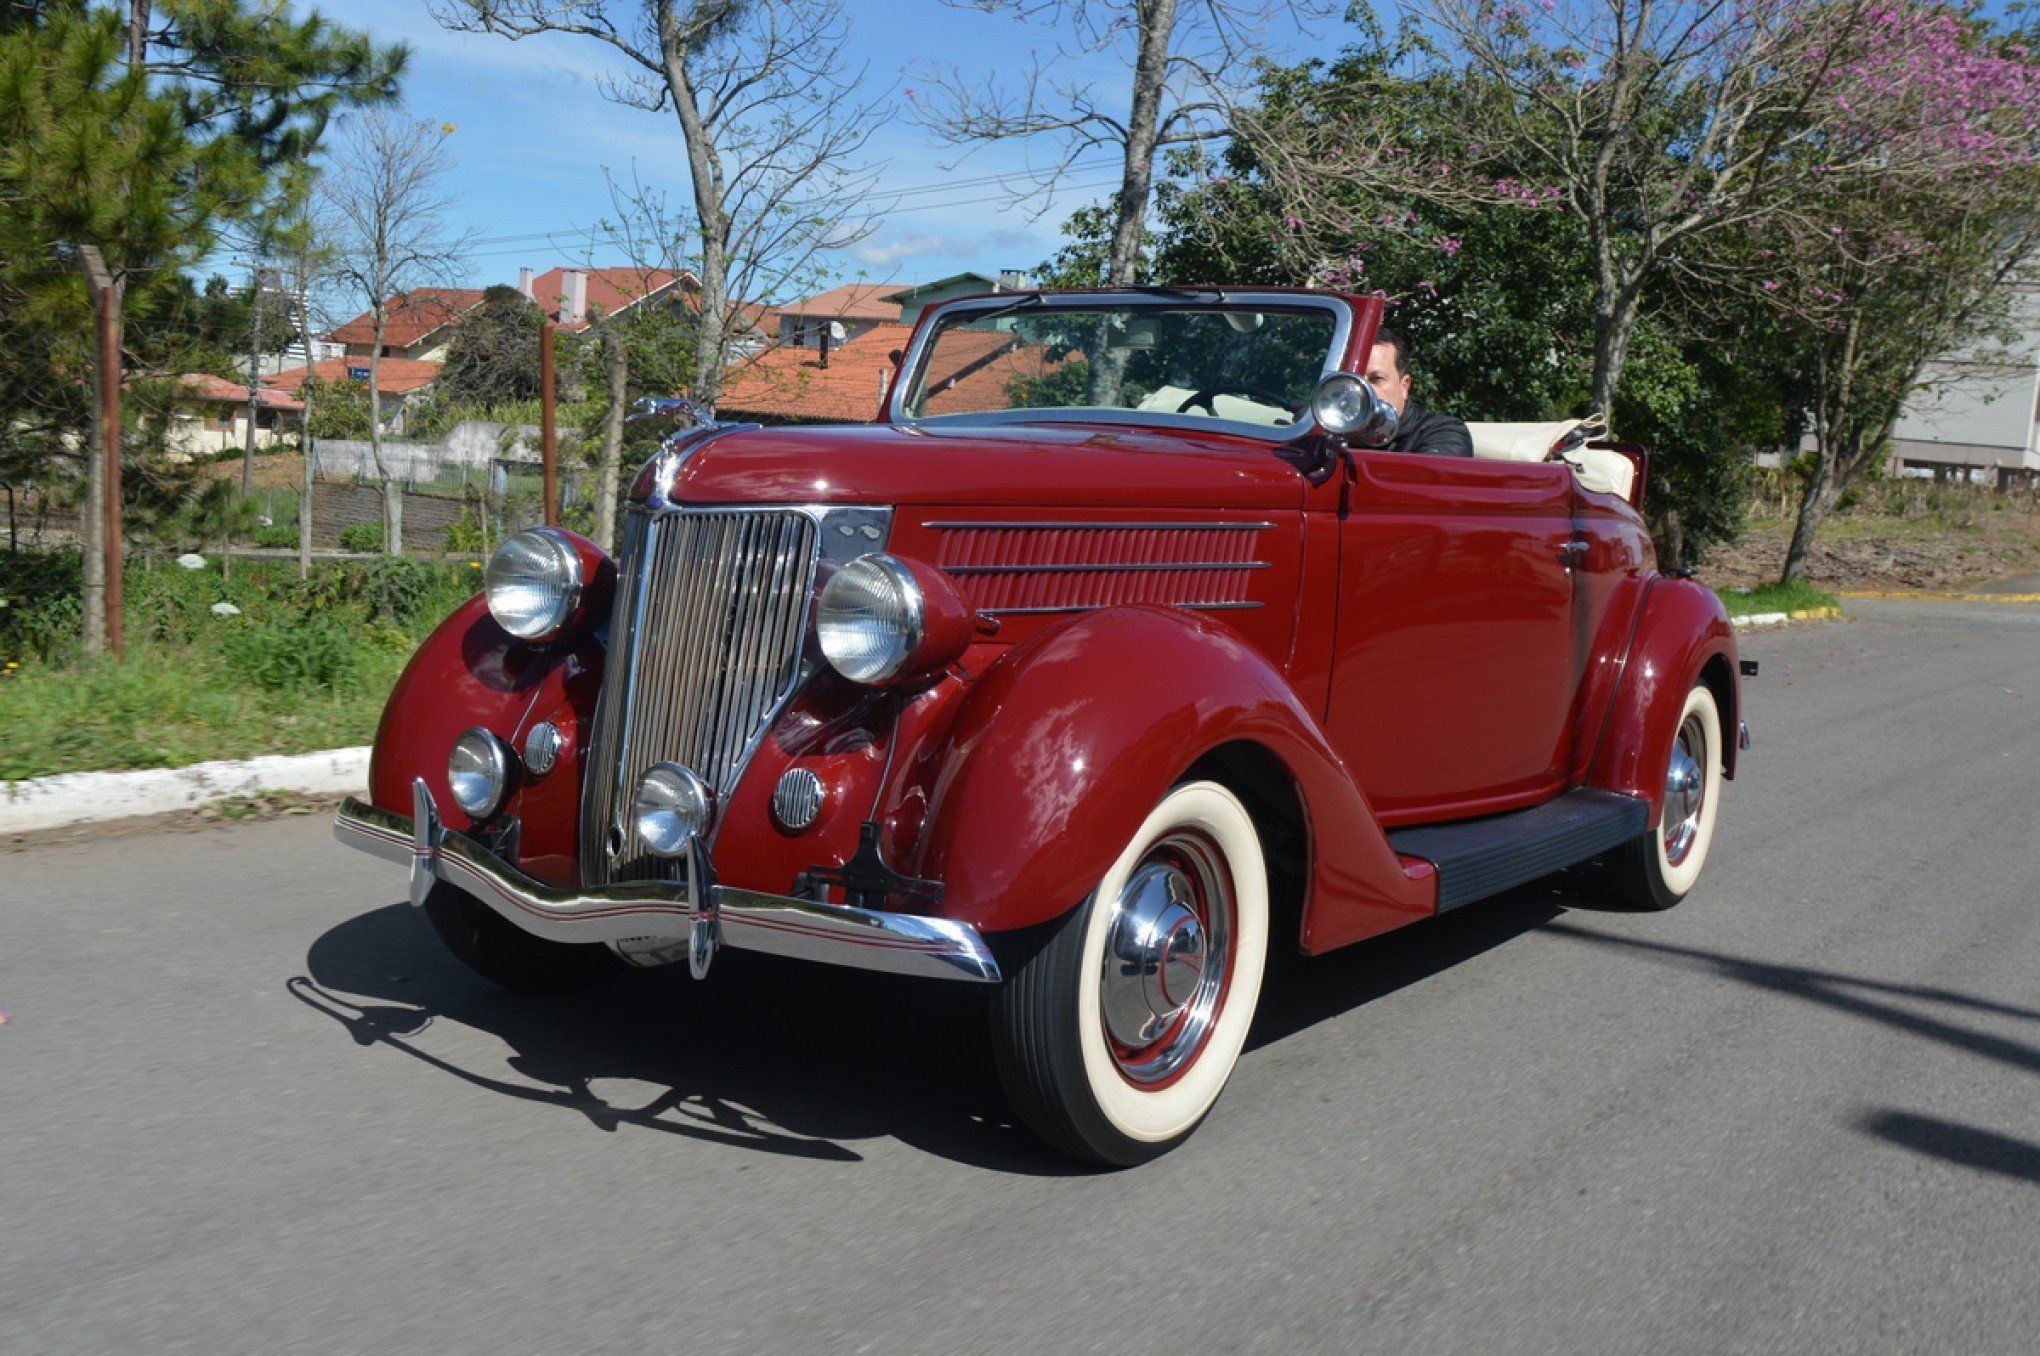 RARIDADE: Conheça o carro que será destaque do 30º Encontro Sul-Brasileiro de Veículos Antigos